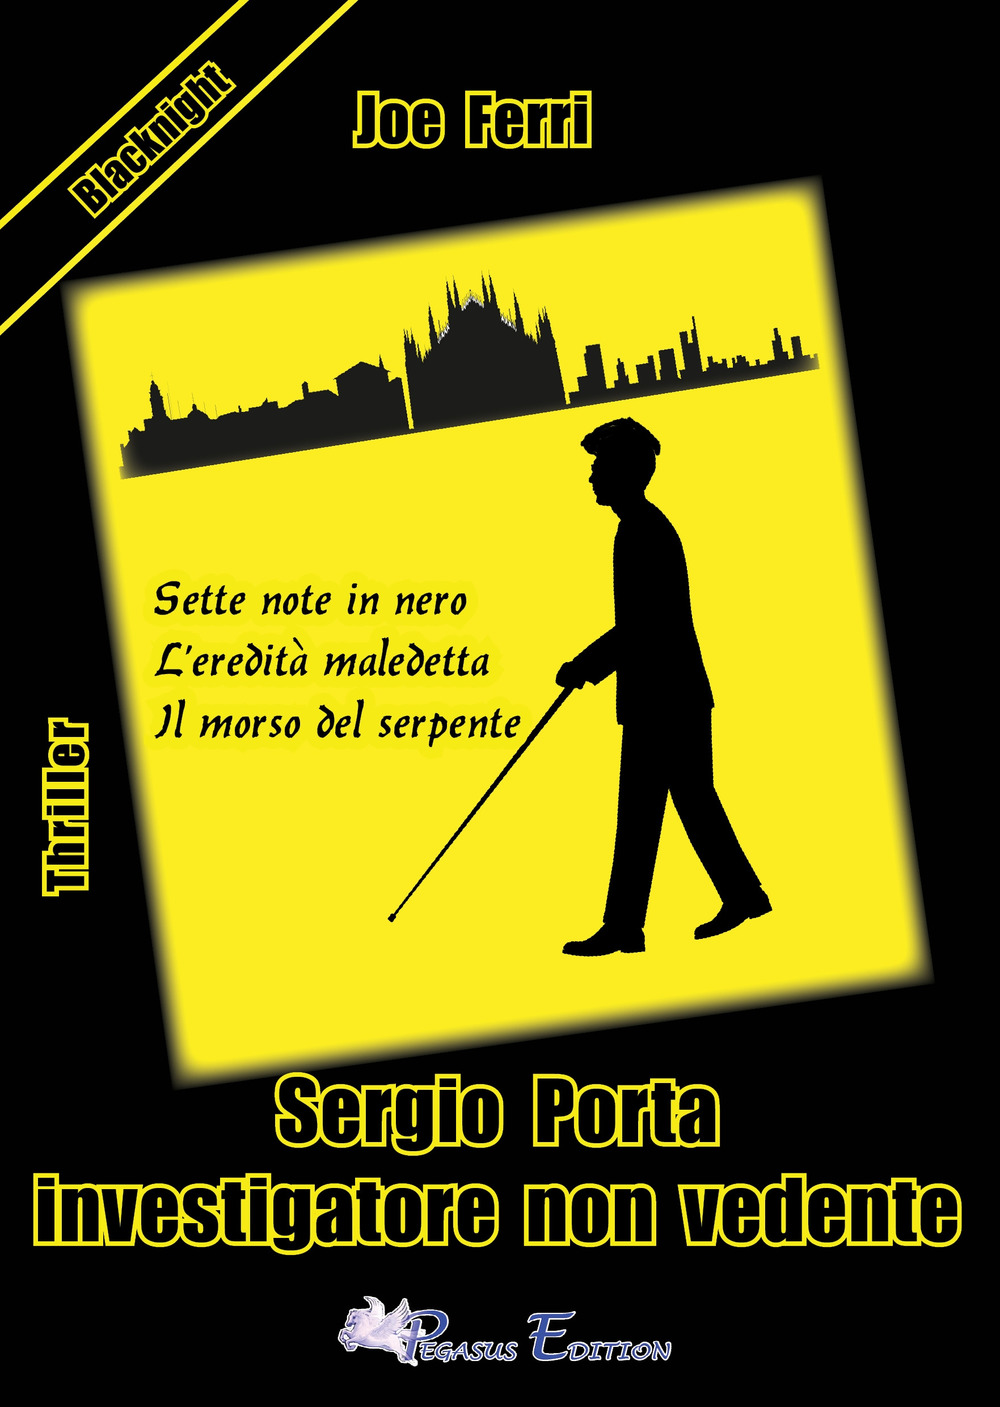 Sergio Porta investigatore non vedente